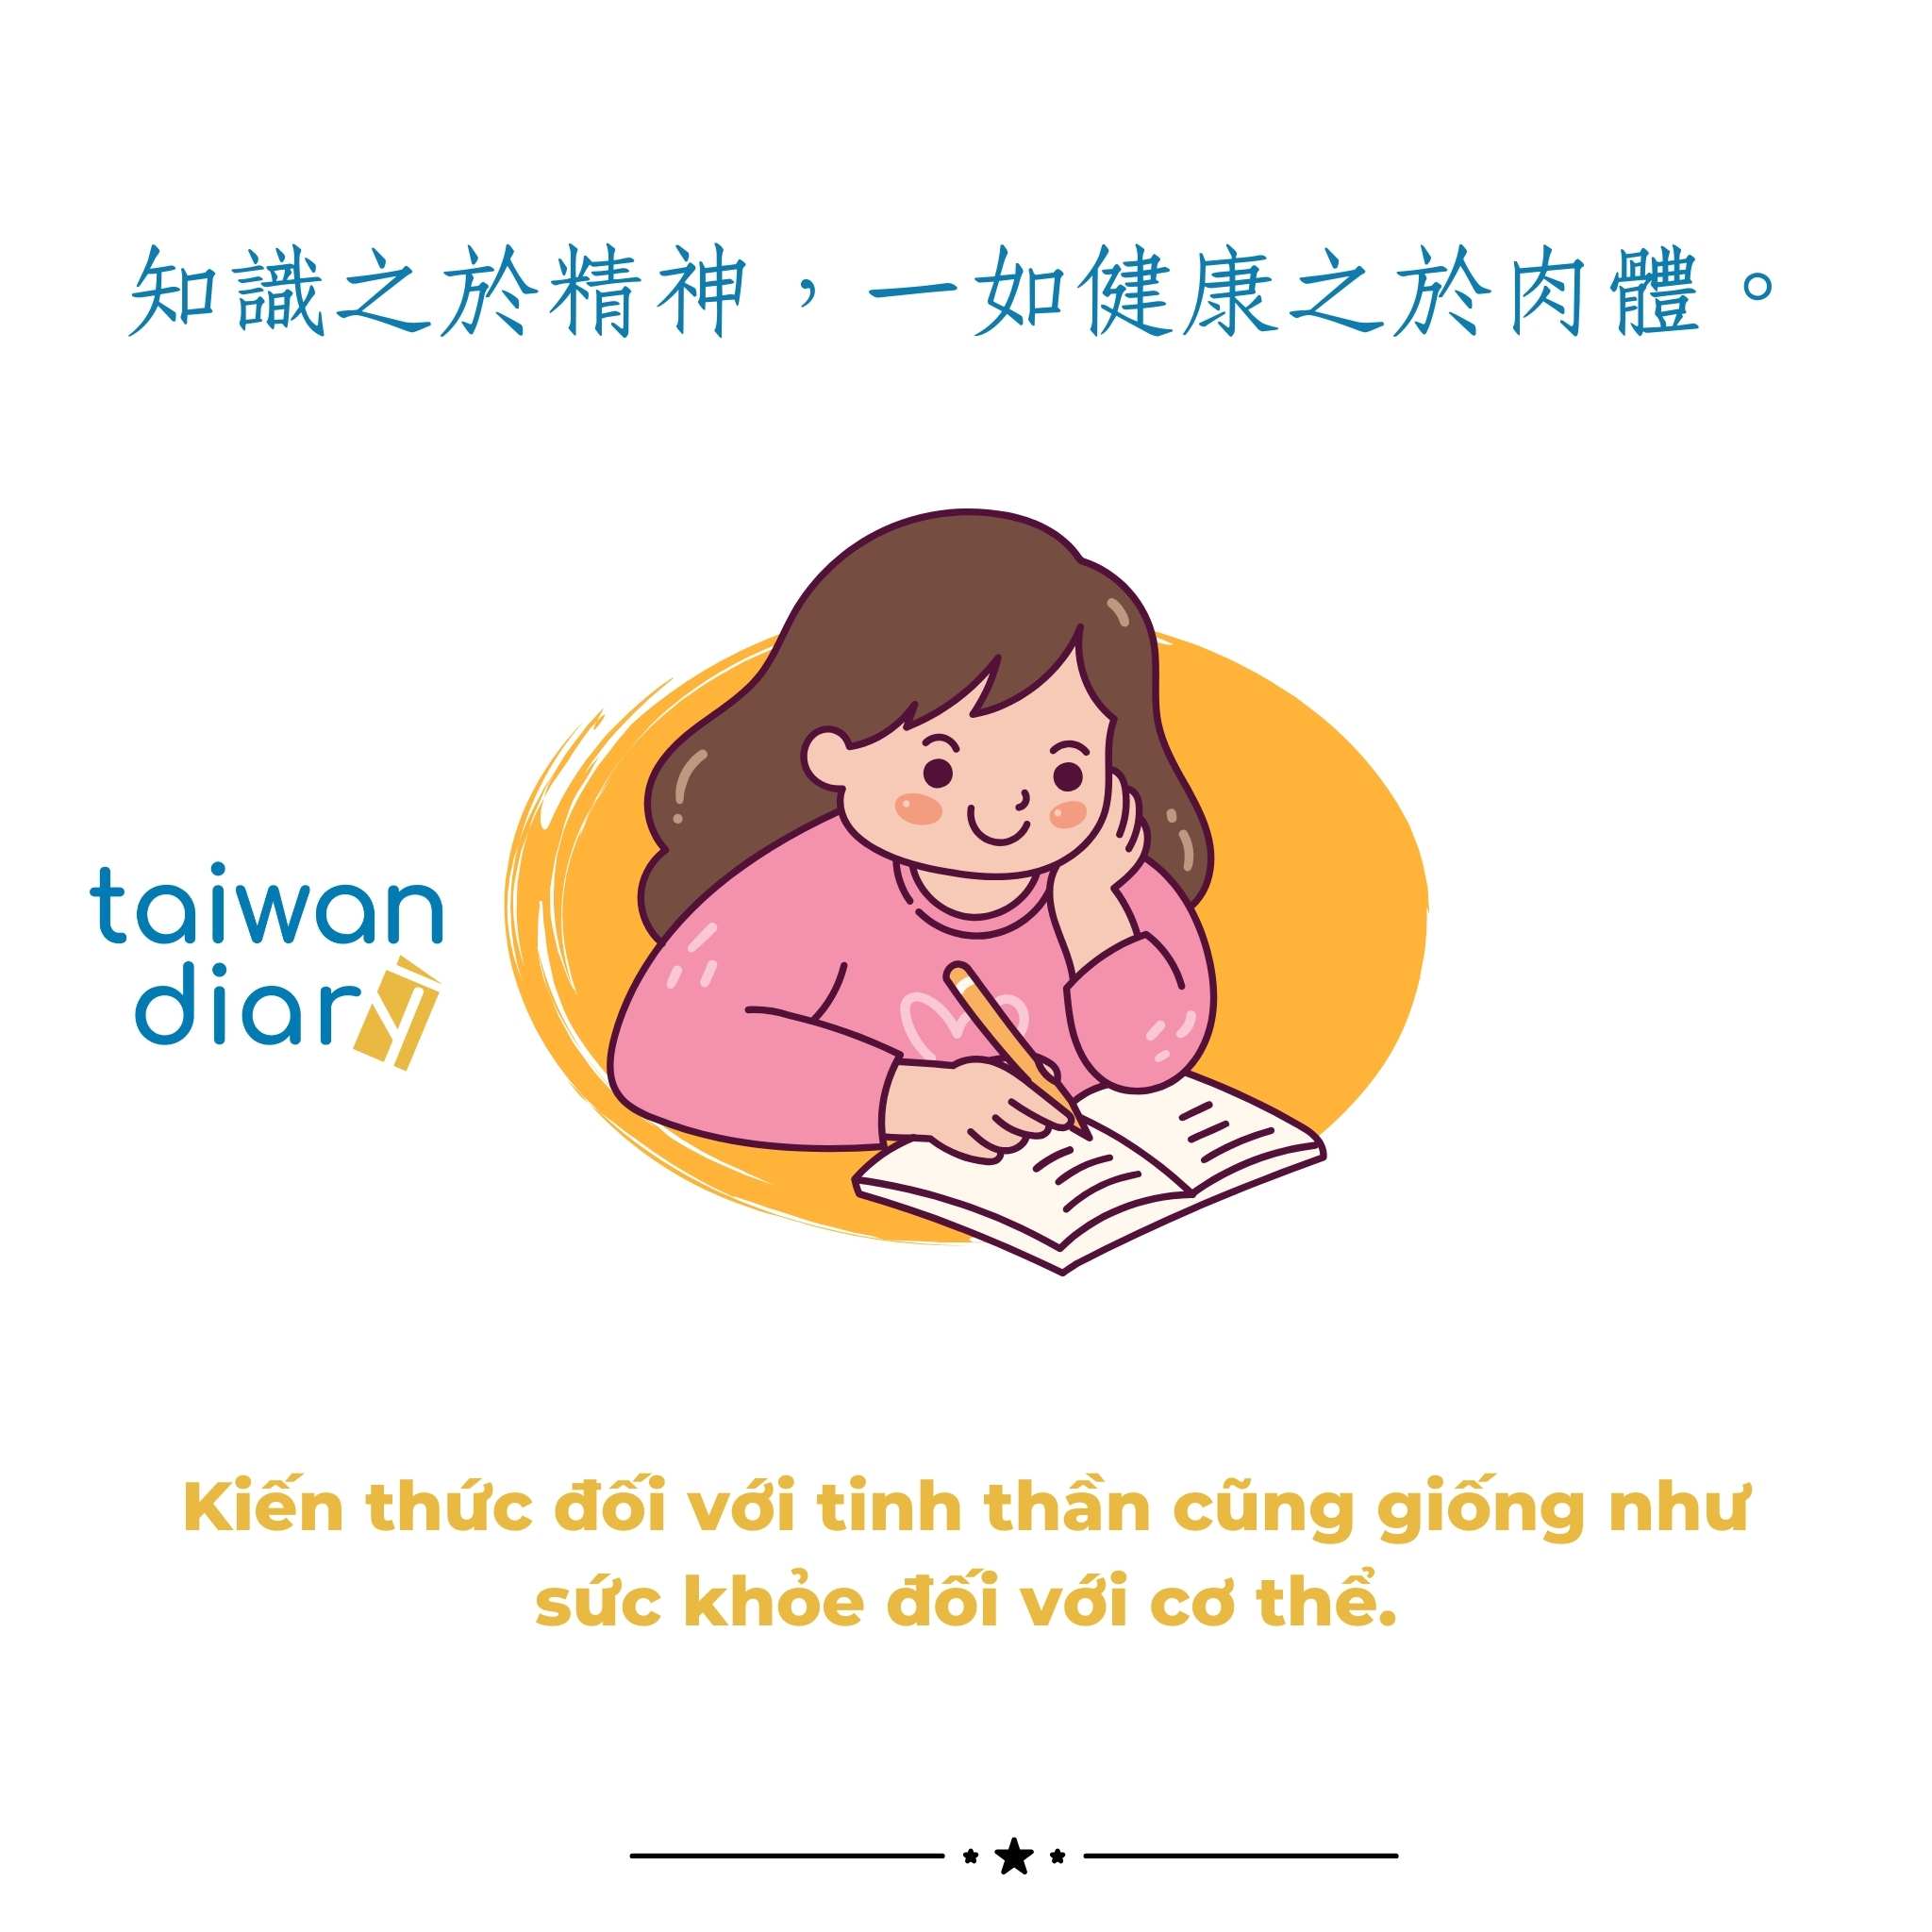 Câu nói tiếng Trung phồn thể chủ đề Học tập